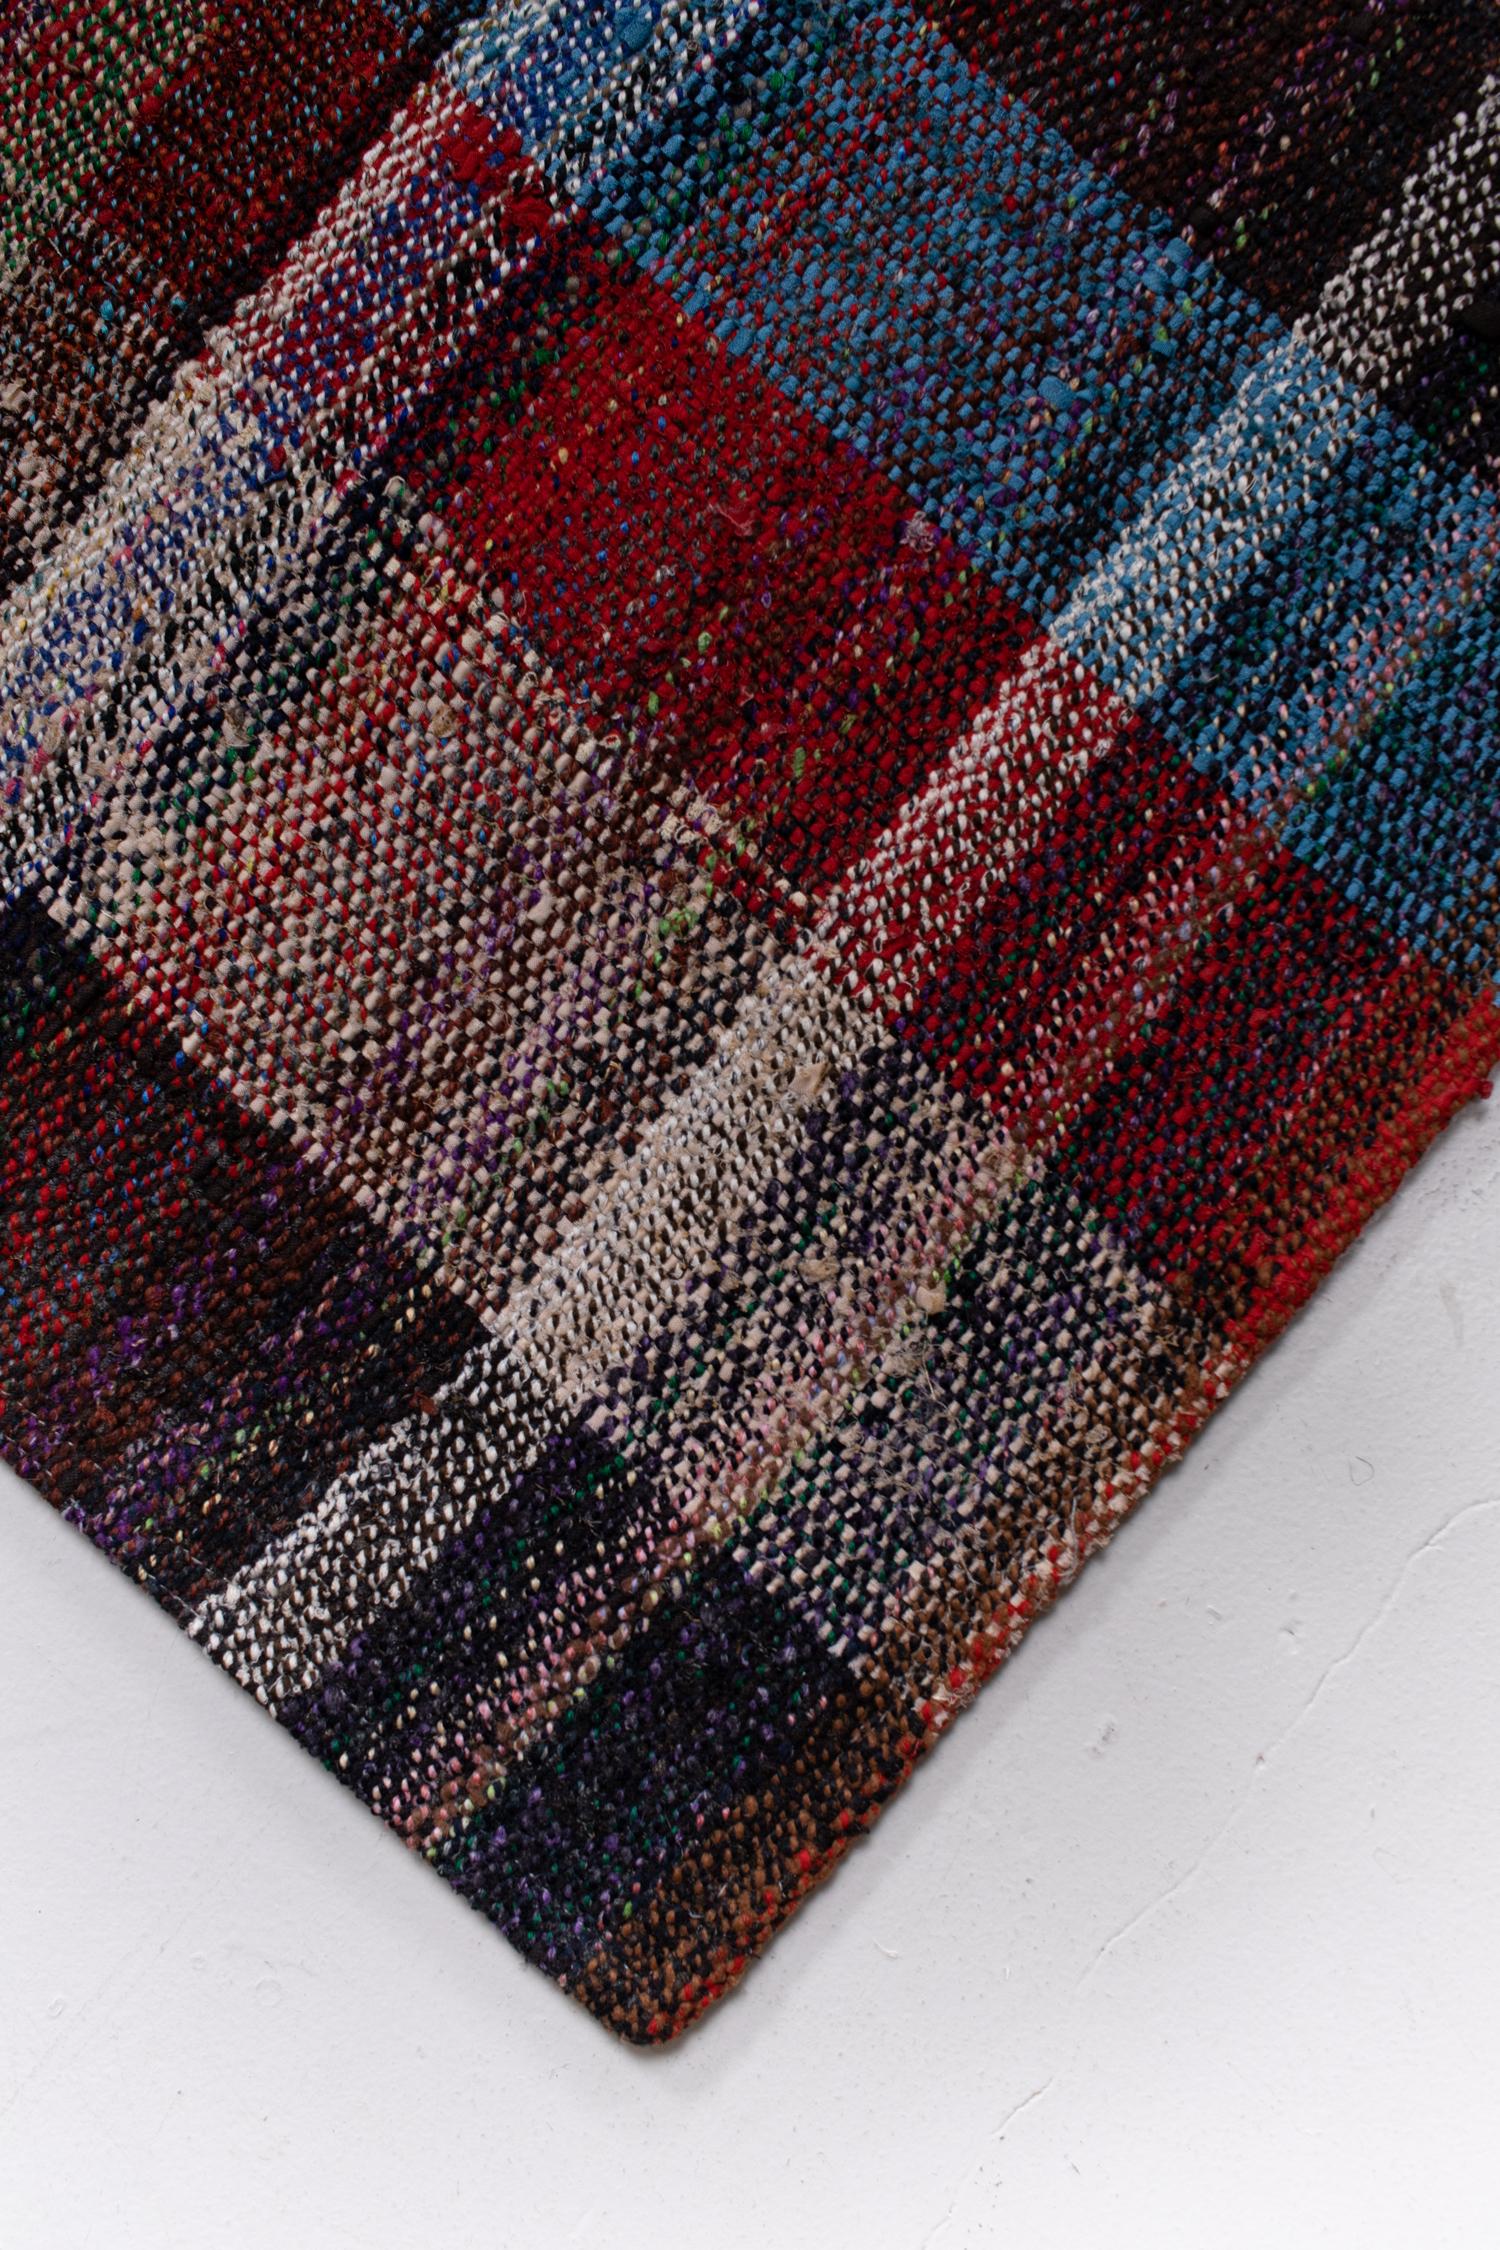 Wool Vintage Oversize Turkish Adana Kilim Rug For Sale